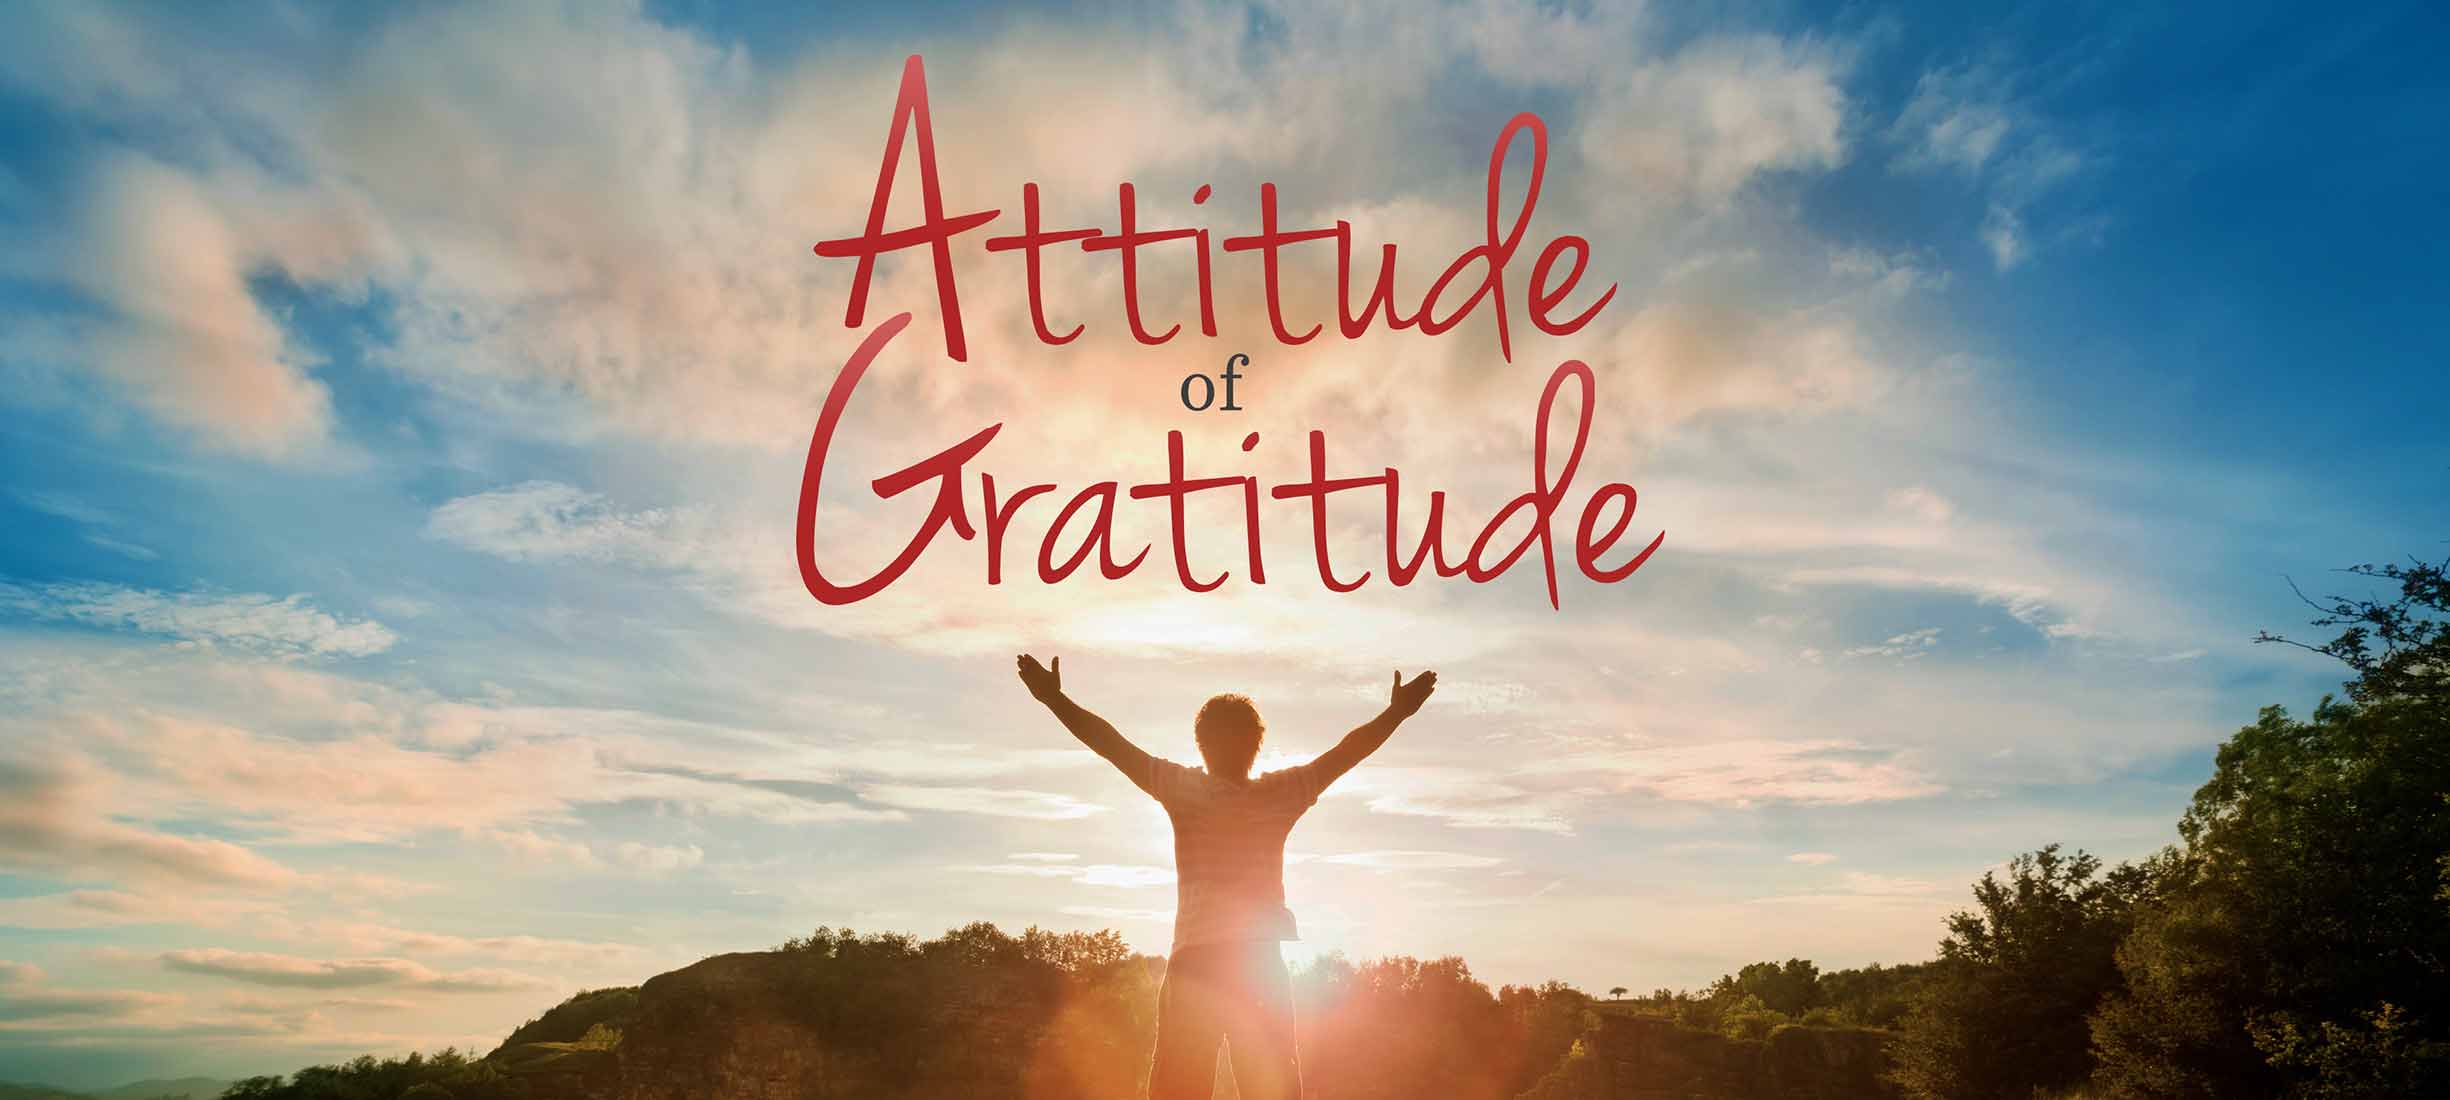 Attitudes Of Gratitude